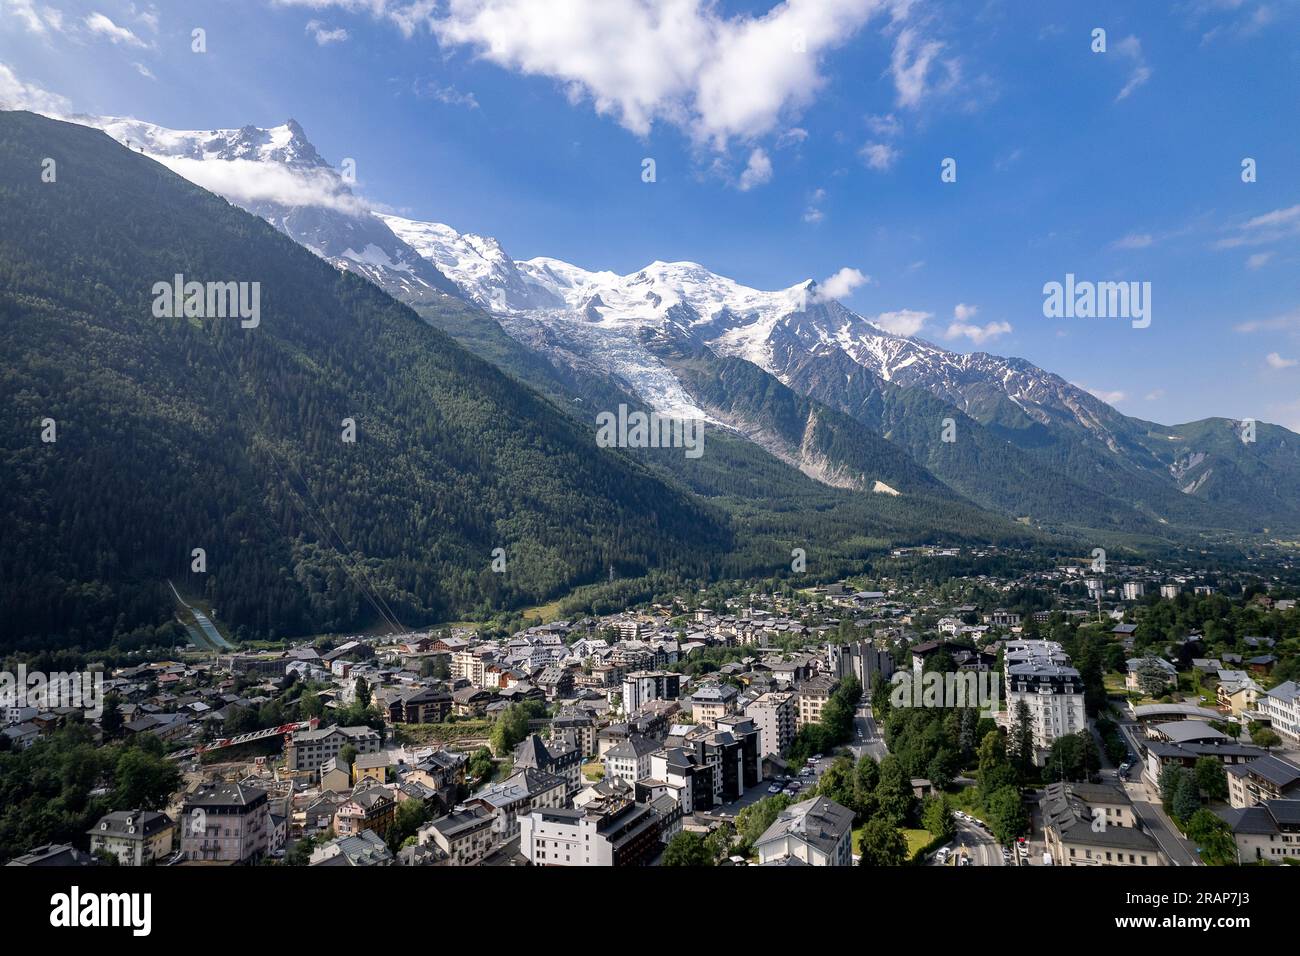 Aerea di destinazione turistica nelle Alpi francesi, villaggio di Chamonix con il massiccio del Monte bianco sullo sfondo. Stazione sciistica durante l'estate Foto Stock